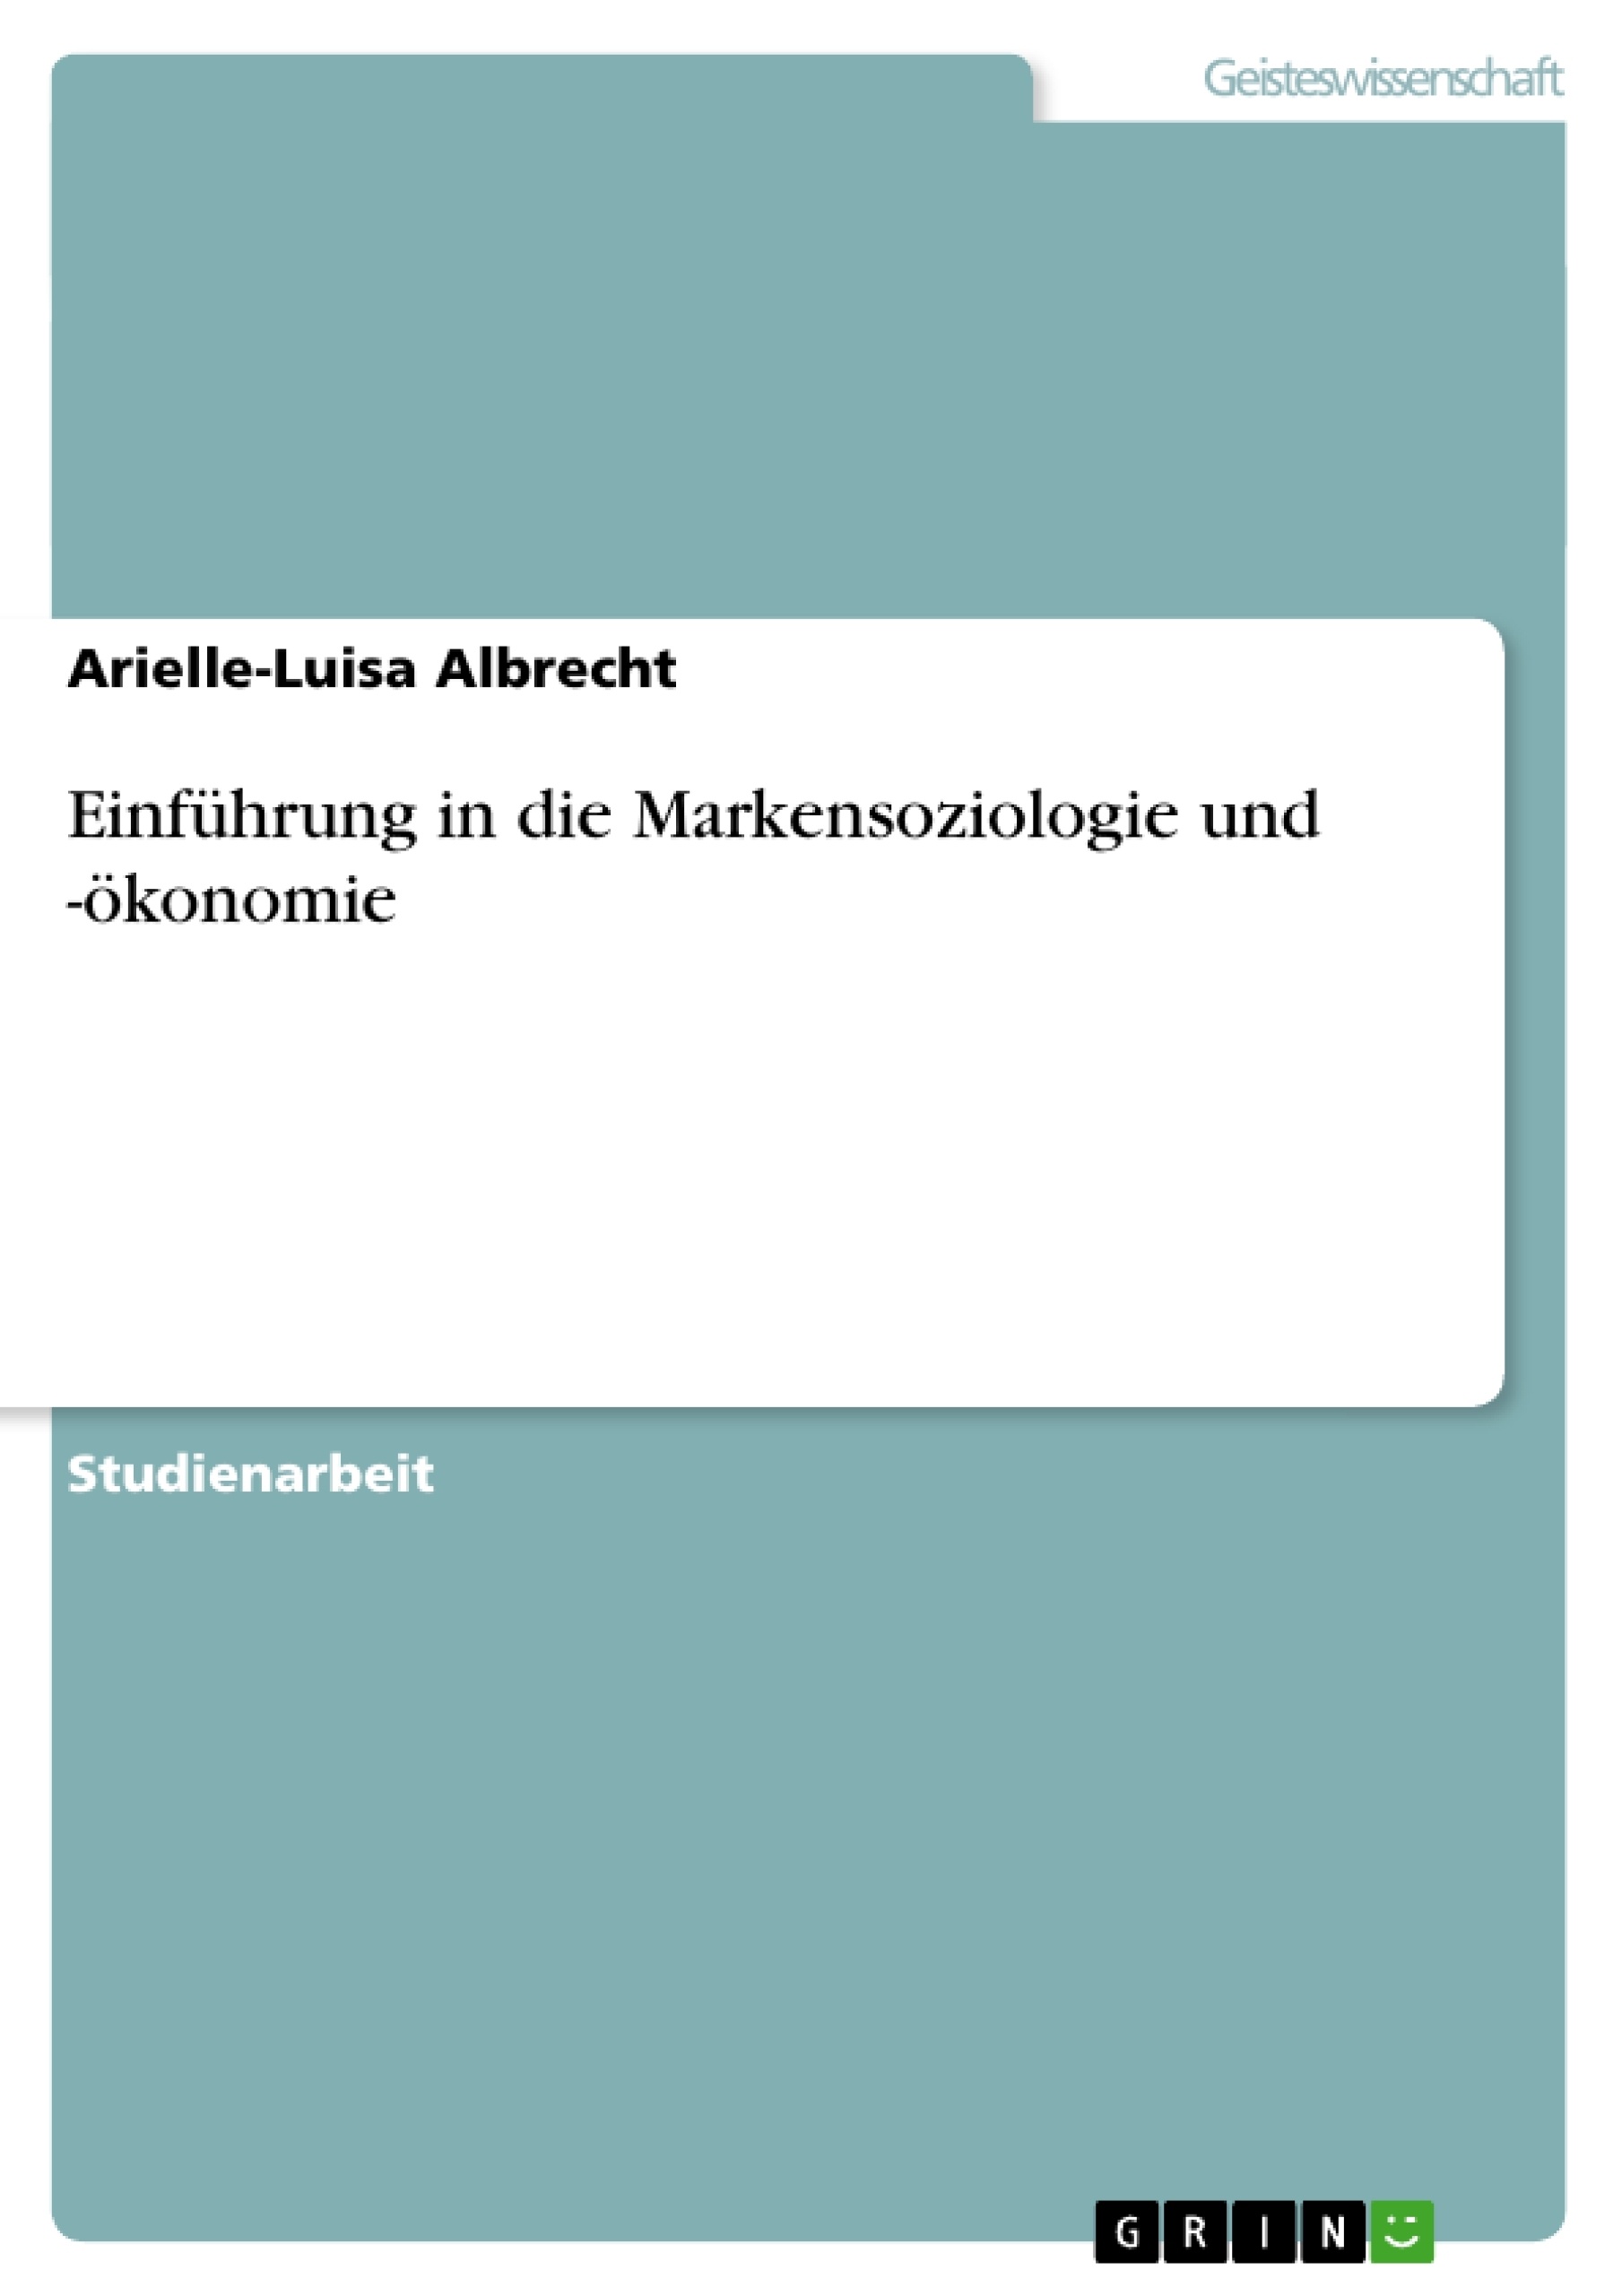 Título: Einführung in die Markensoziologie und -ökonomie